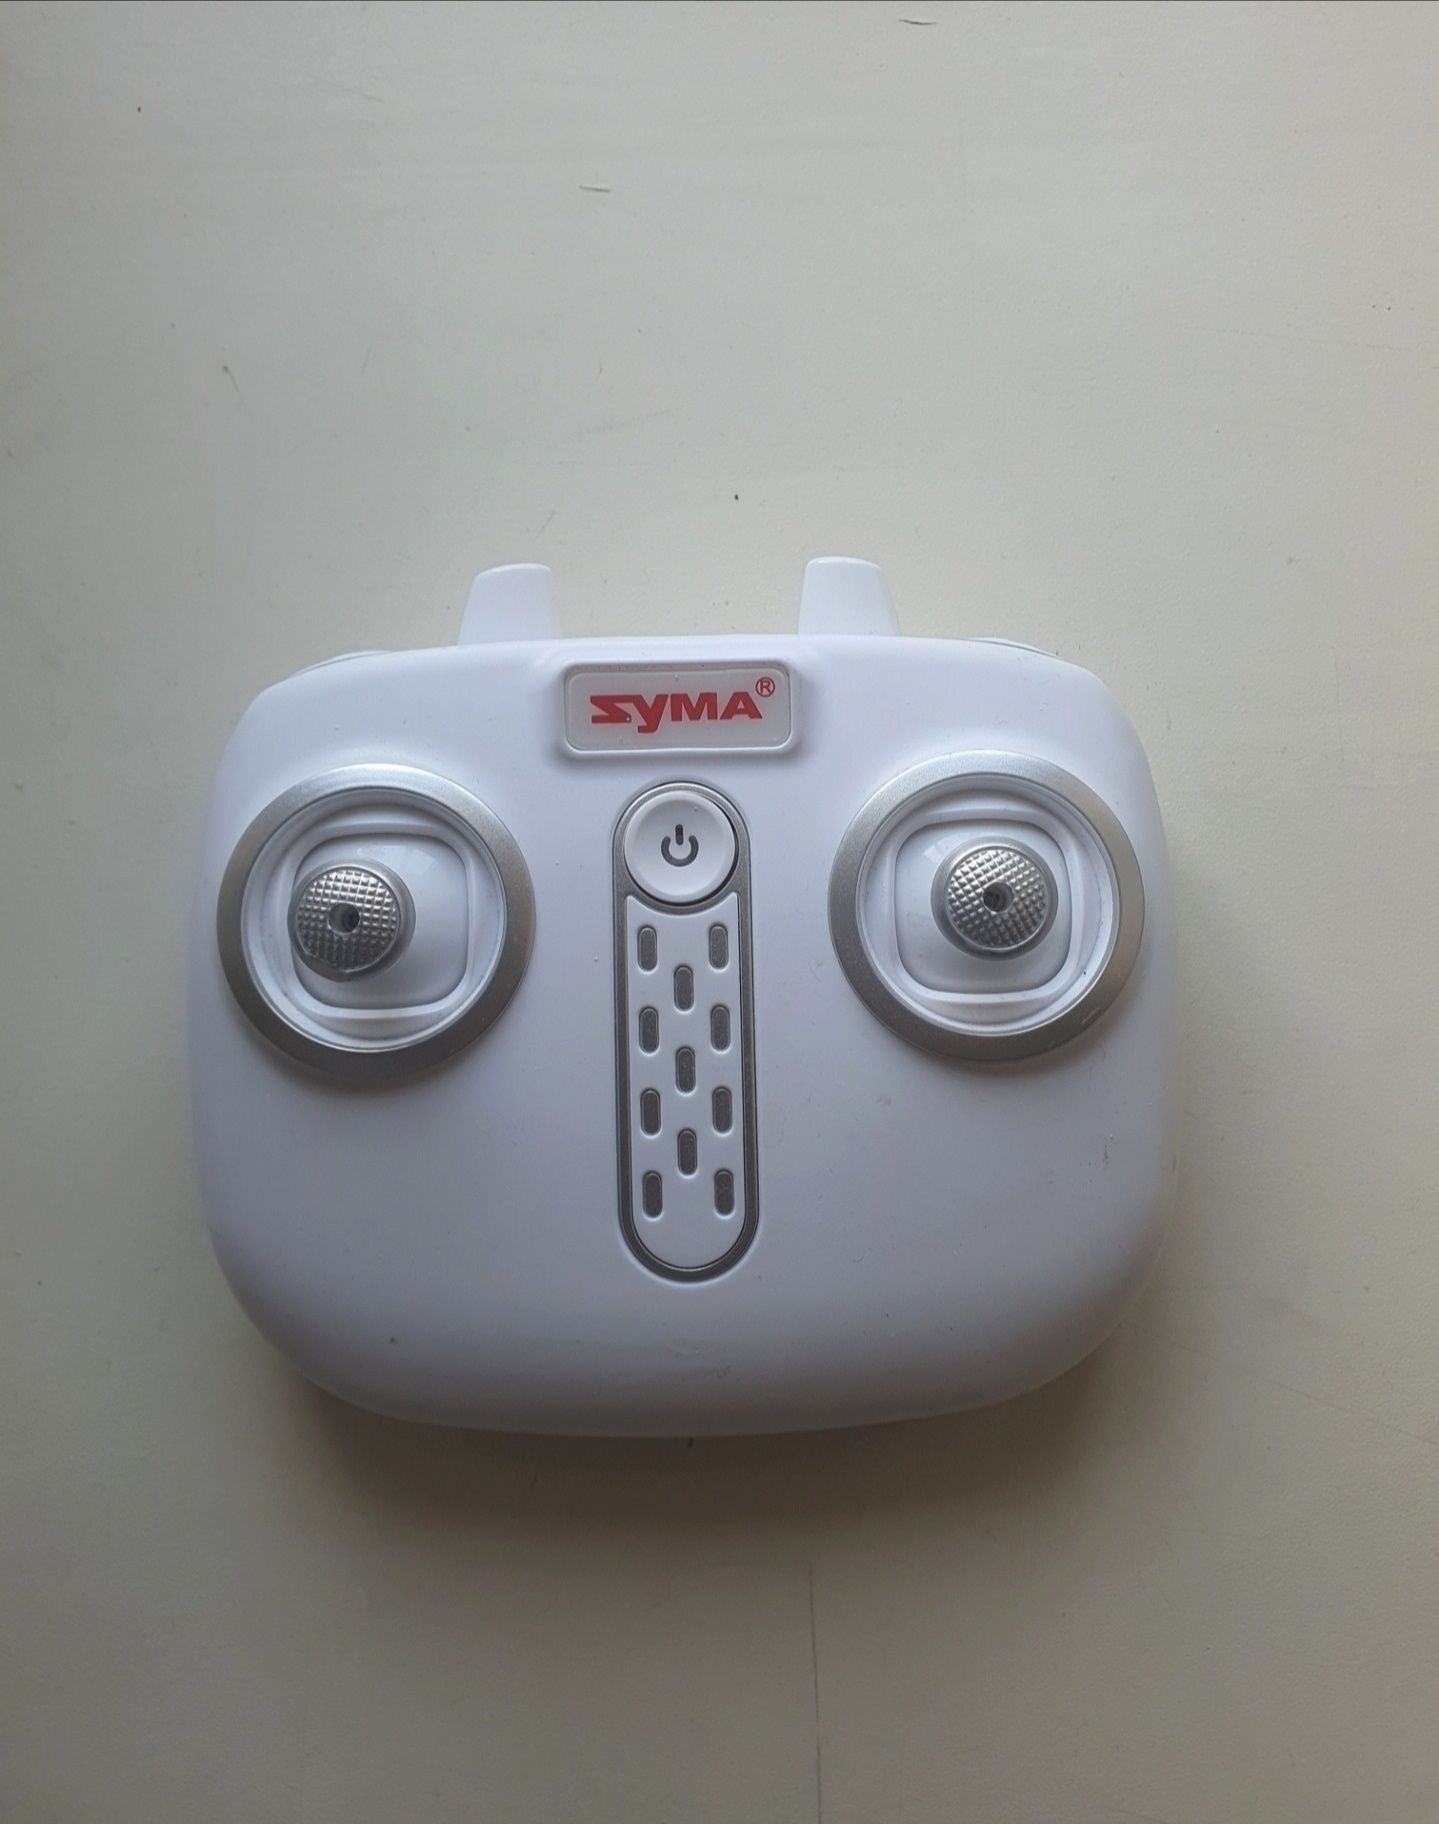 оригинальный пульт управления Zyma для FPV дрона